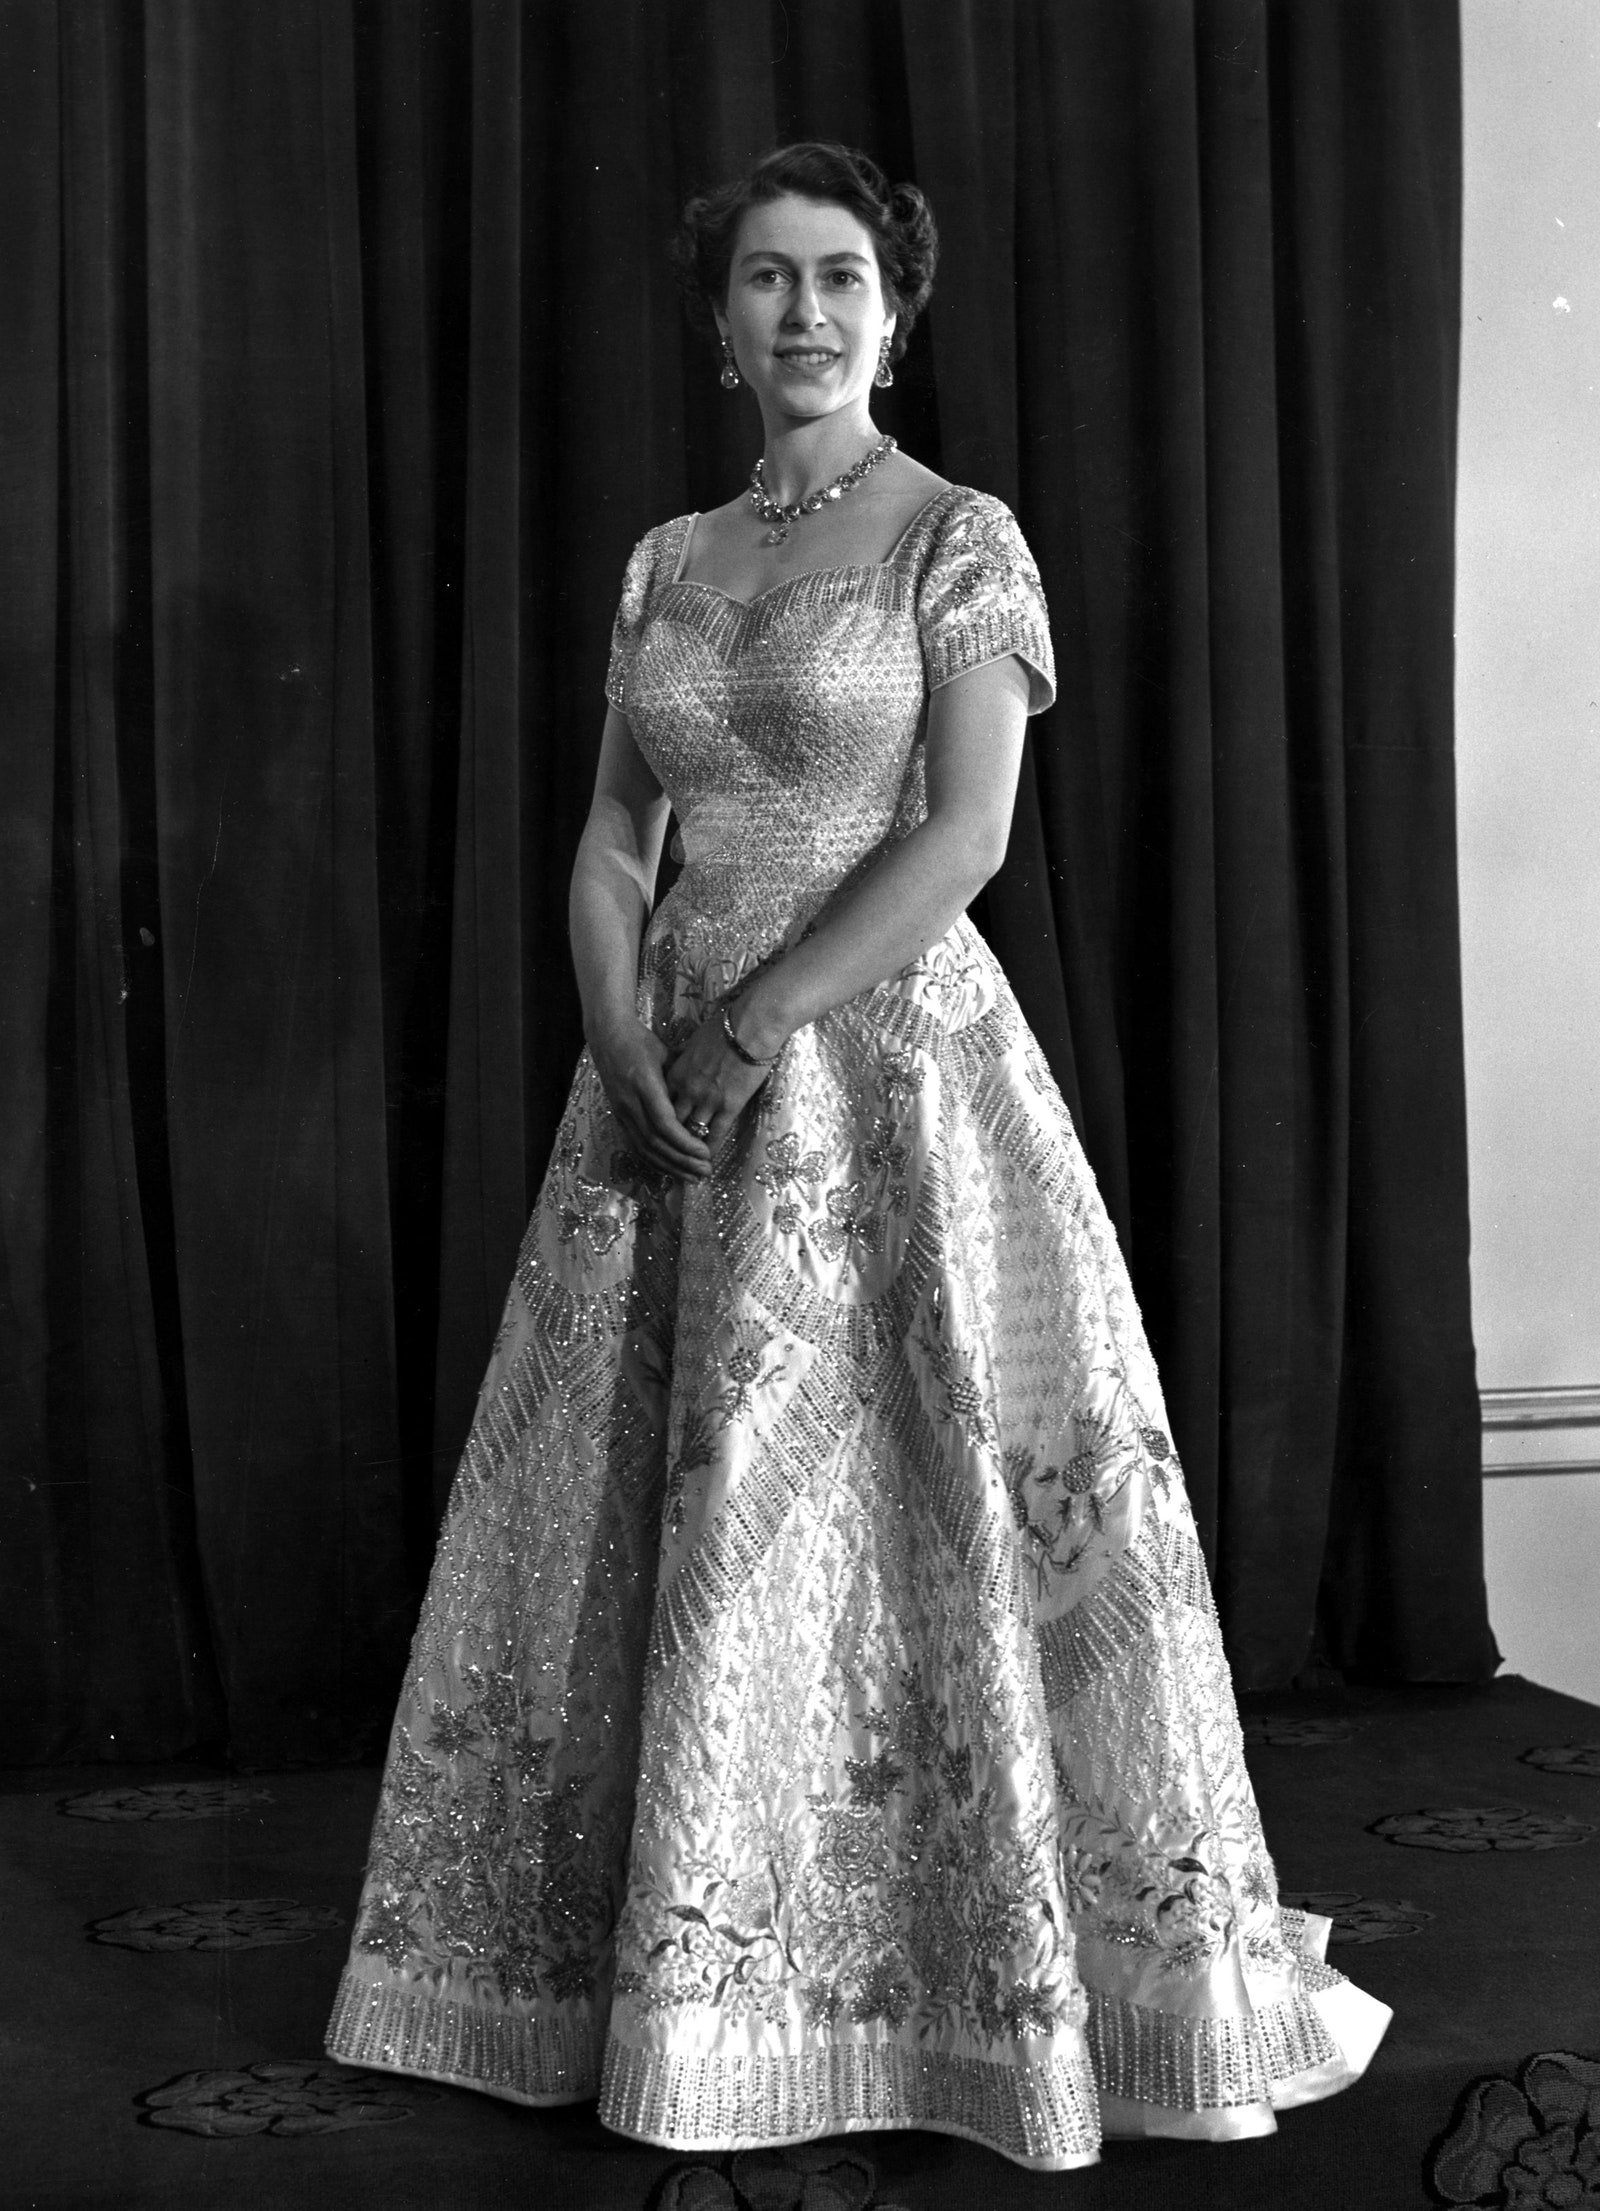 Queen Elizabeth II in her Norman Hartnell dress at her coronation in 1953.